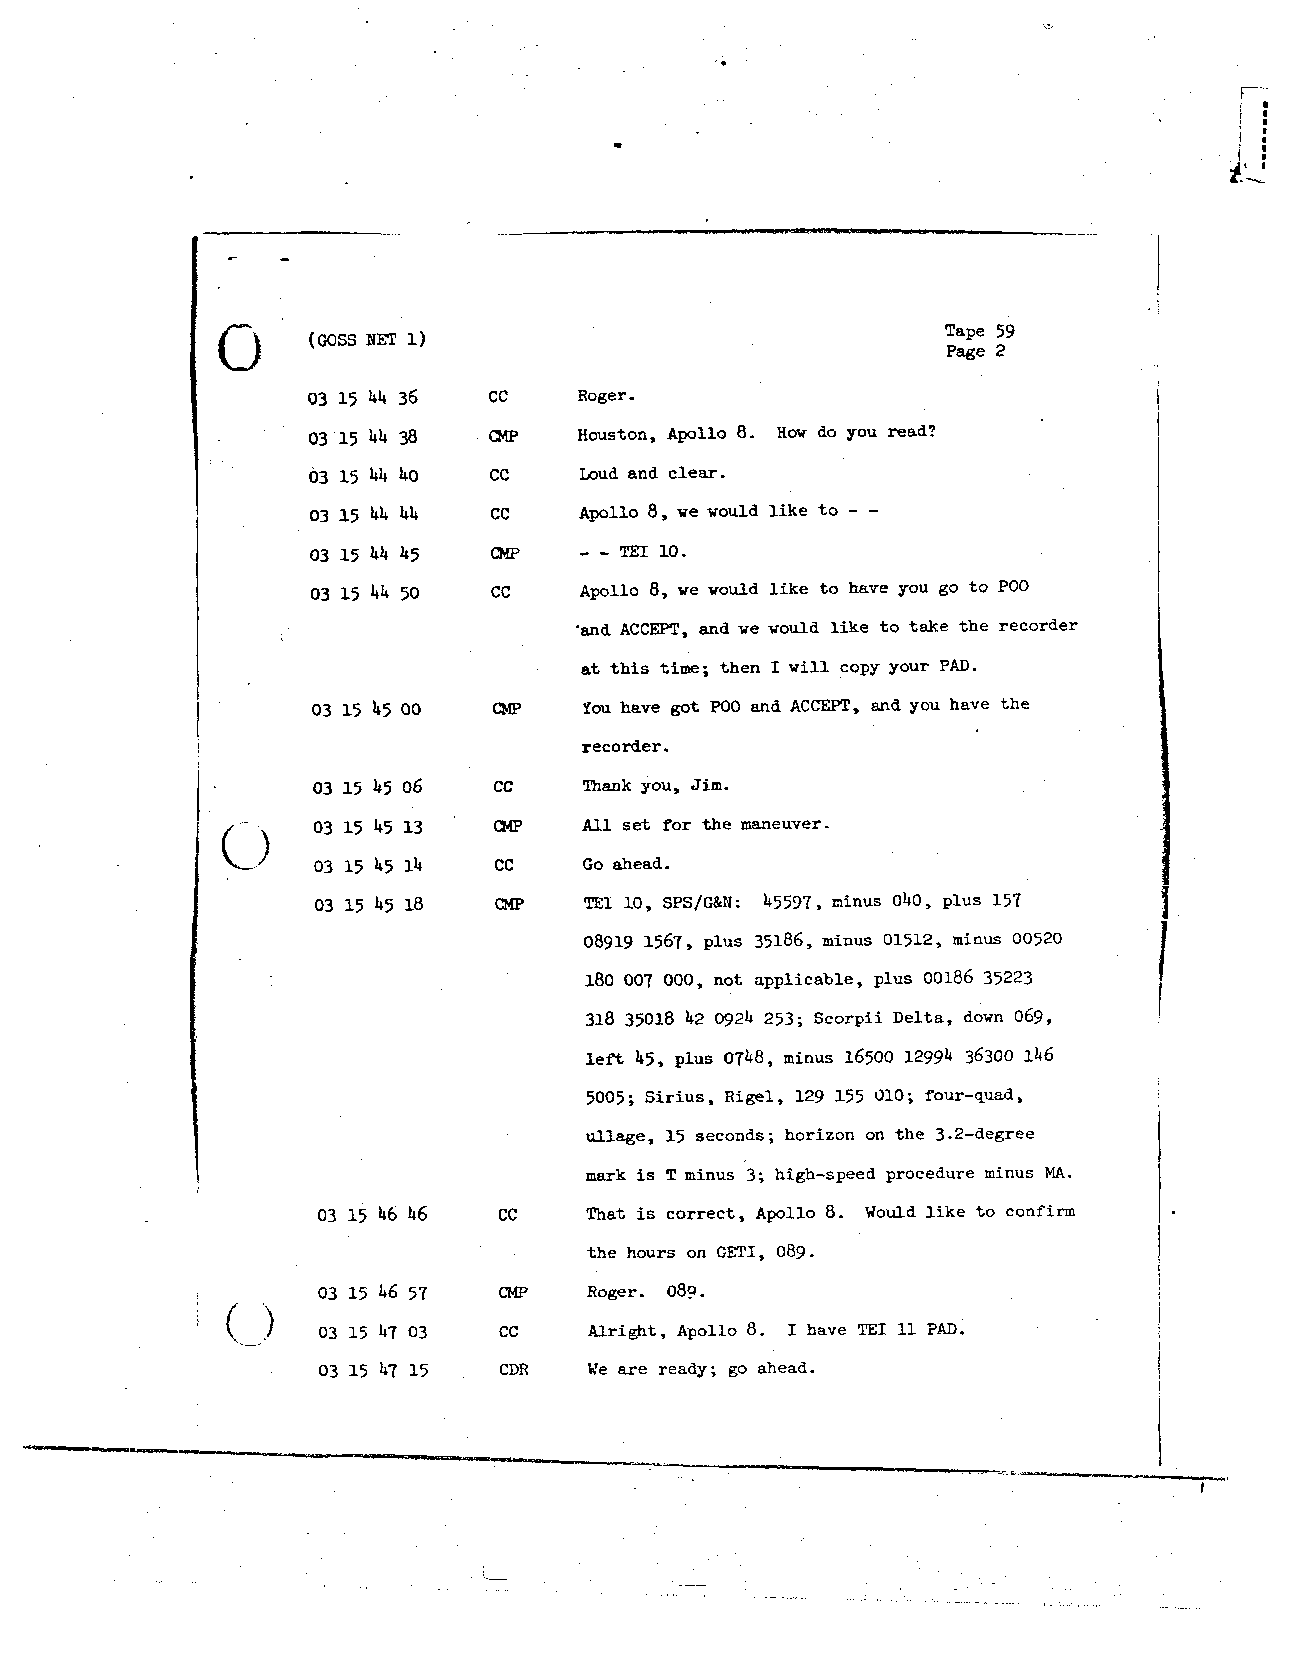 Page 471 of Apollo 8’s original transcript